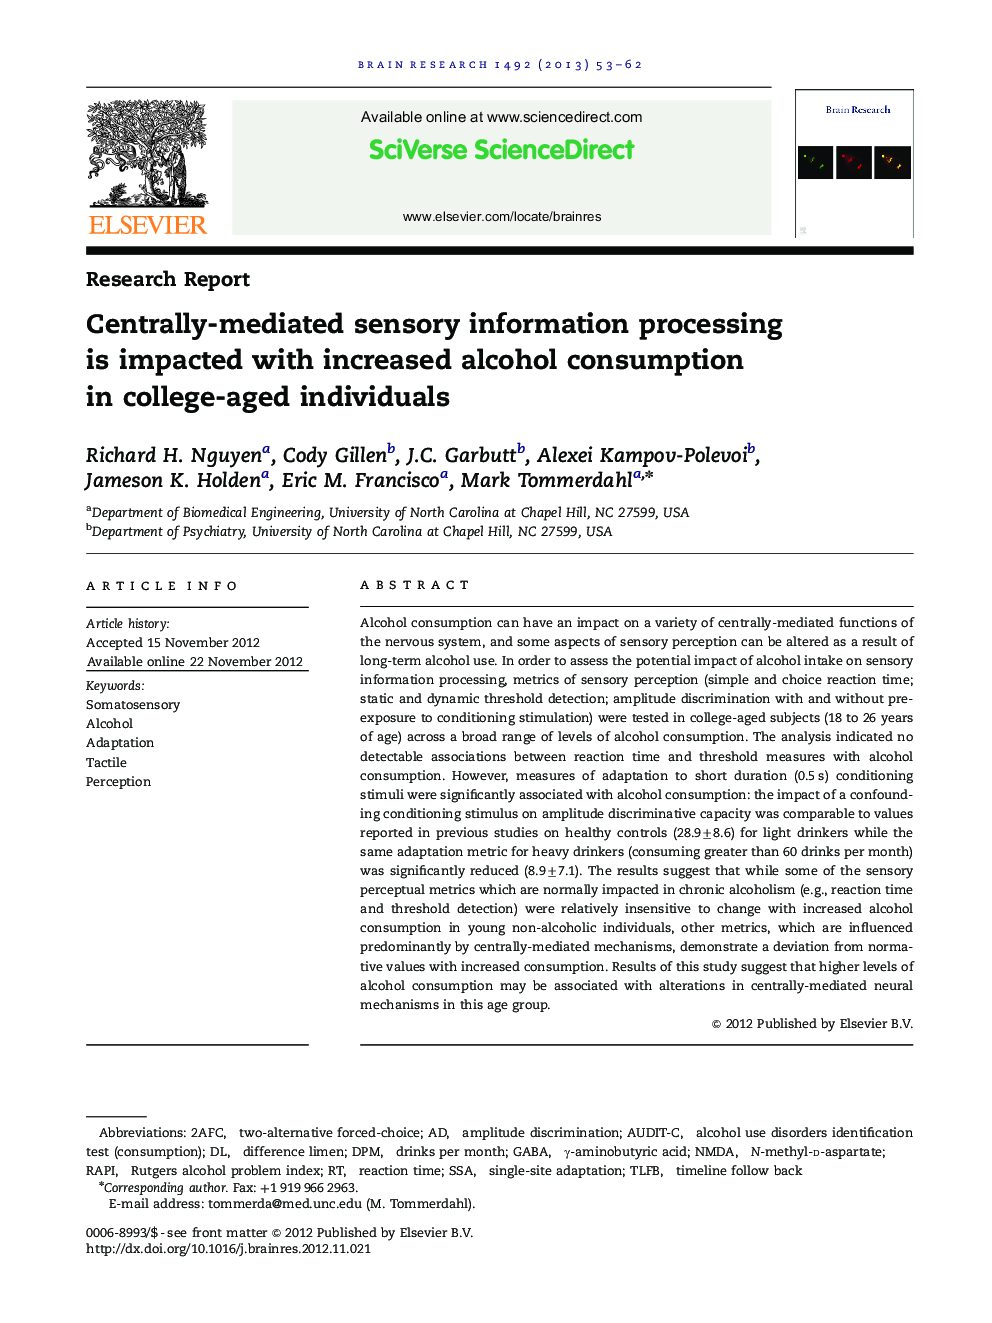 گزارش تحقیق پردازش اطلاعات حسی متمرکزانه با افزایش مصرف الکل در افراد کالجی مواجه است 